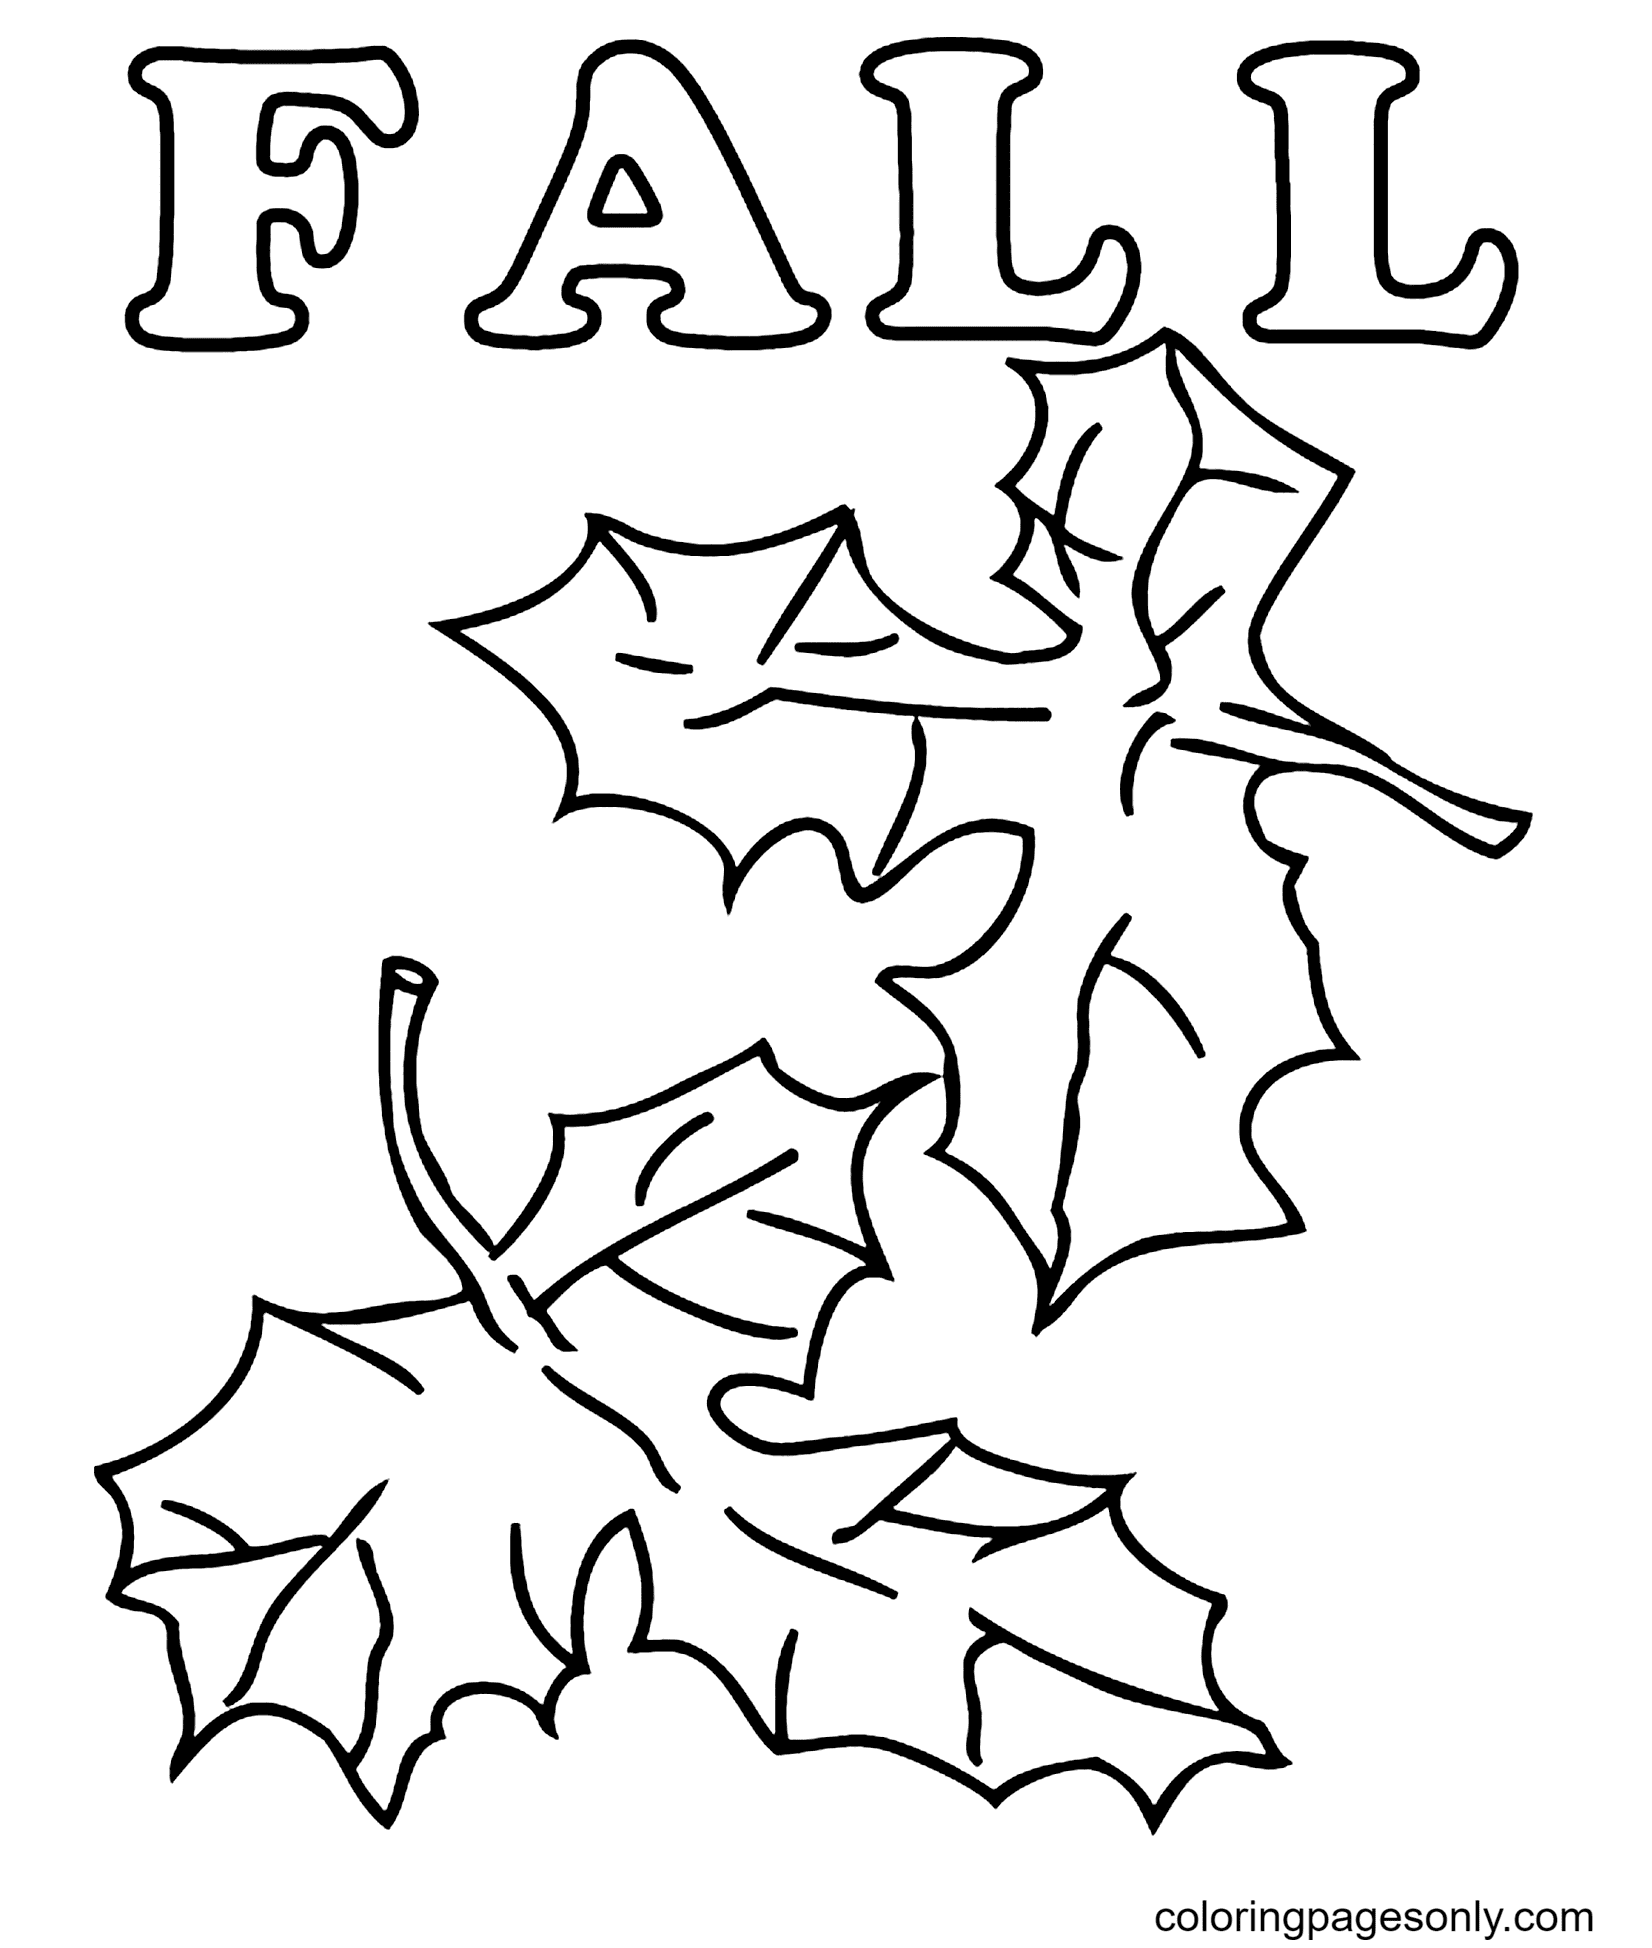 Feuilles d'automne imprimables gratuites à partir de feuilles d'automne